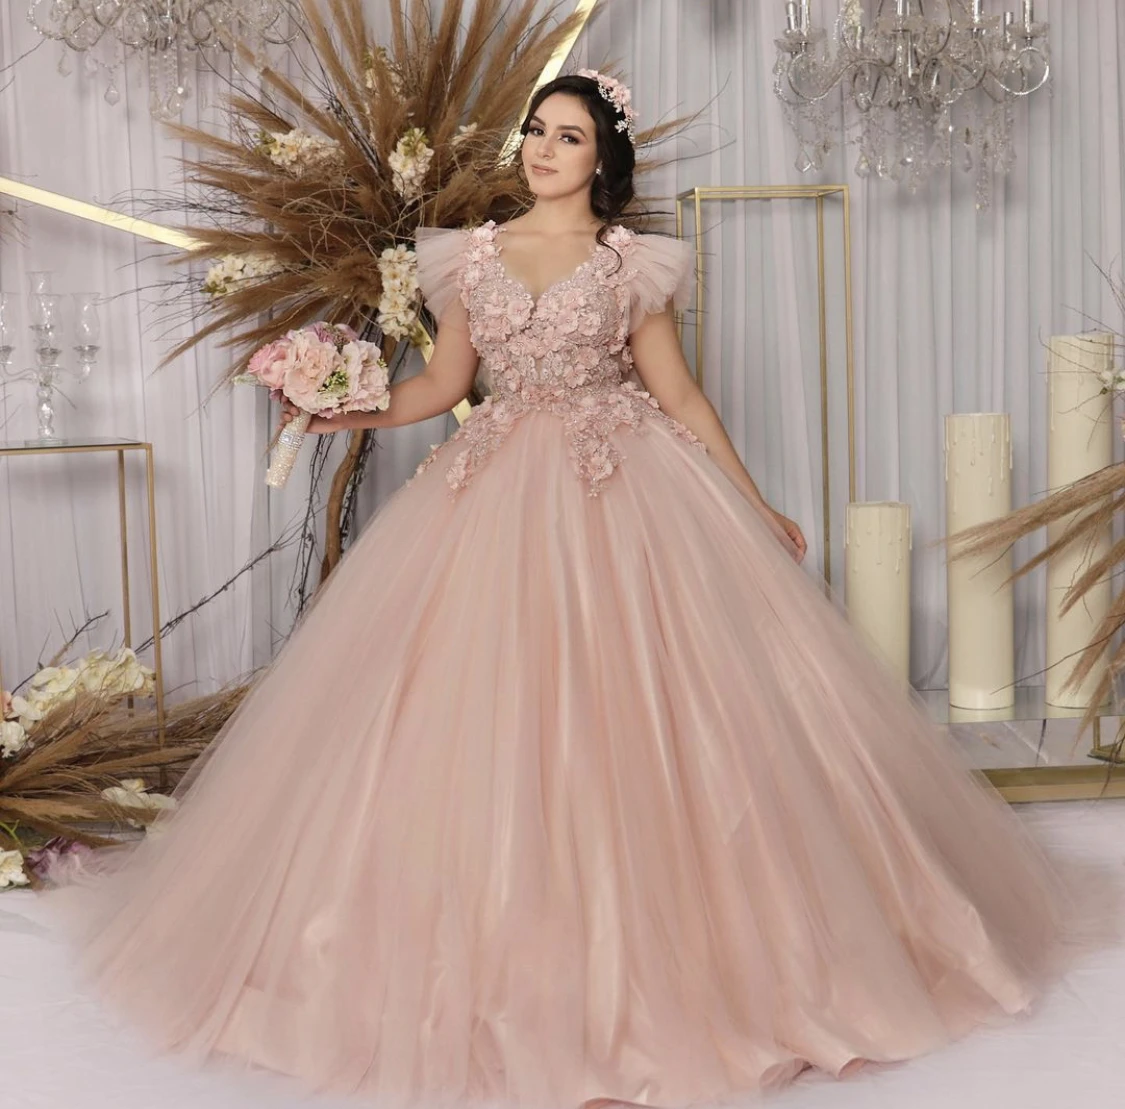 

Pink Princess Quinceanera Dress 2021 V-Neck Cap Sleeve Flowers Sequins Beads Backless Sweet 16 Ball Gown Vestidos De 15 AÃ±os